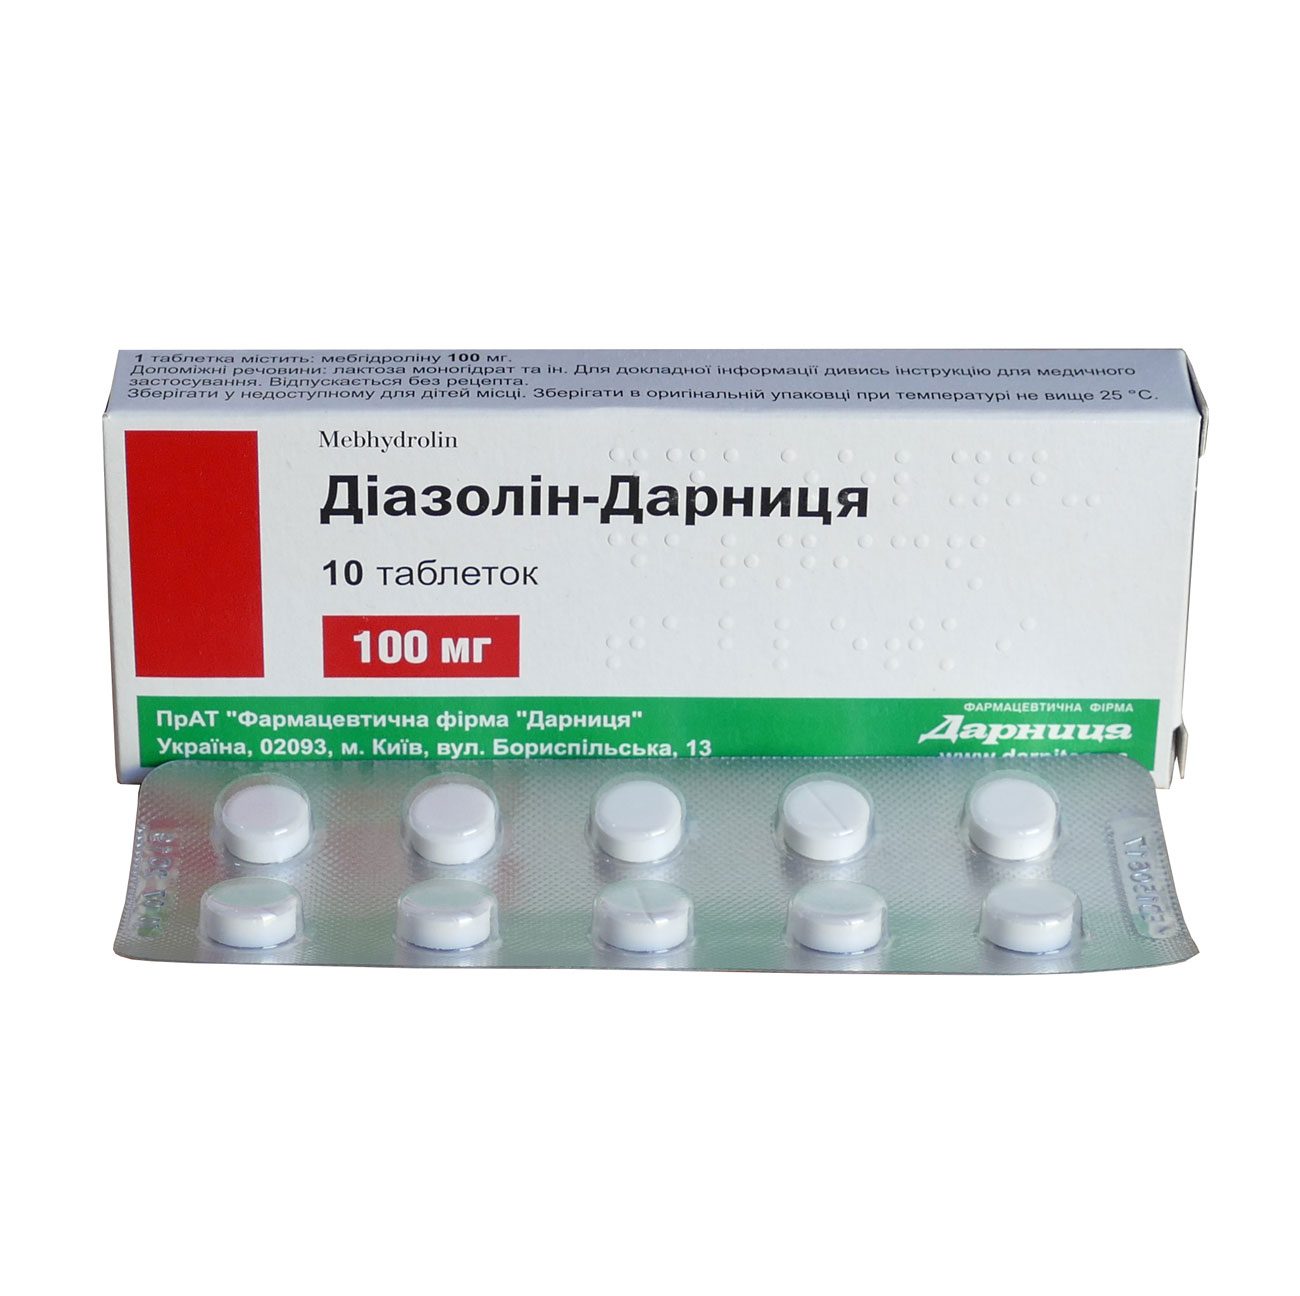 Диазолин - таблетки от чего? инструкция по применении и цена препарата